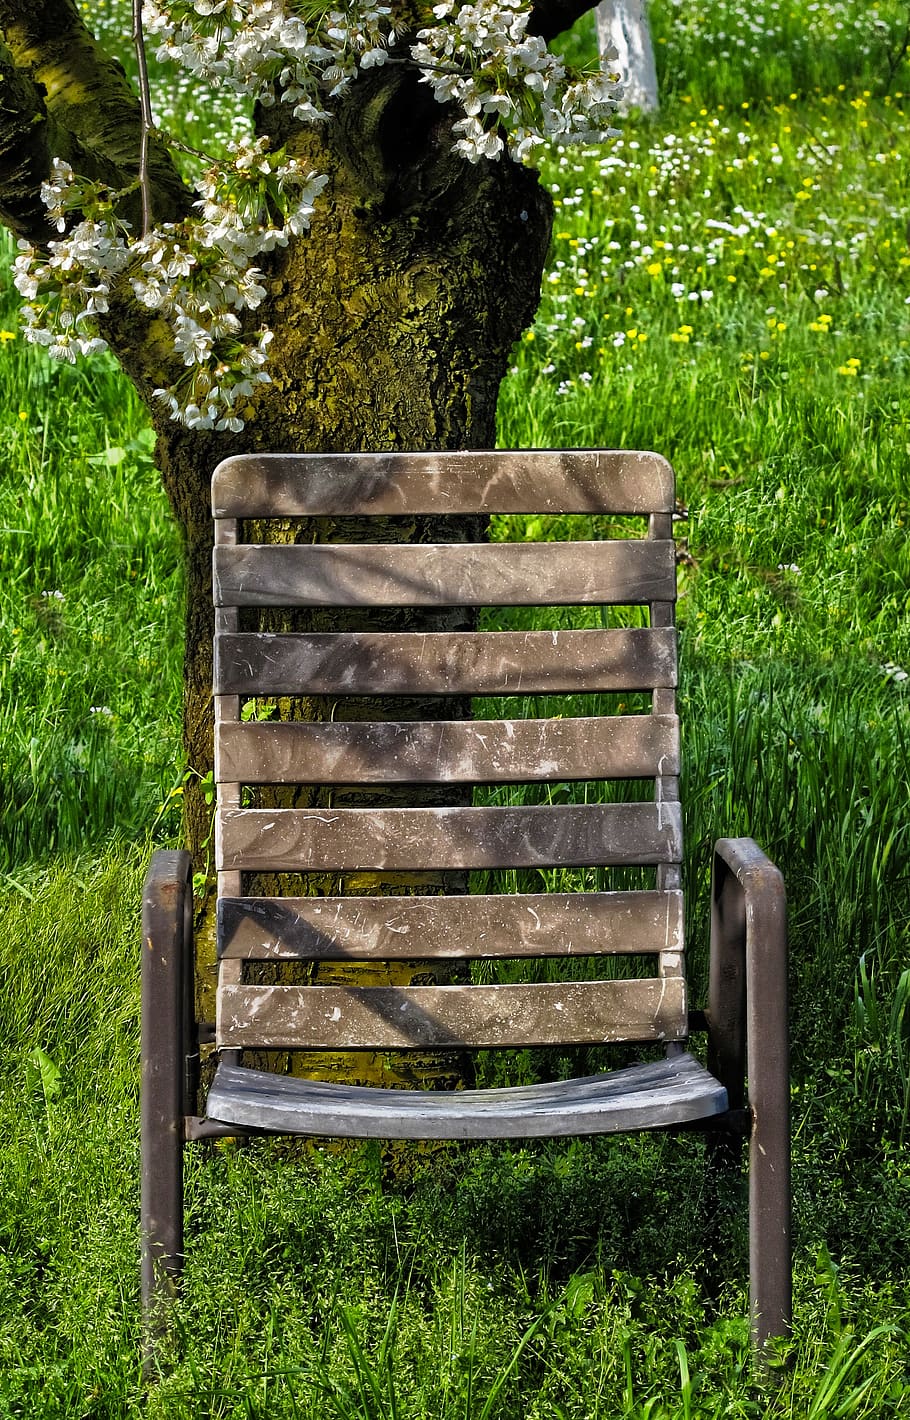 cherry tree, grass, garden chair, flowers, cherry blossoms